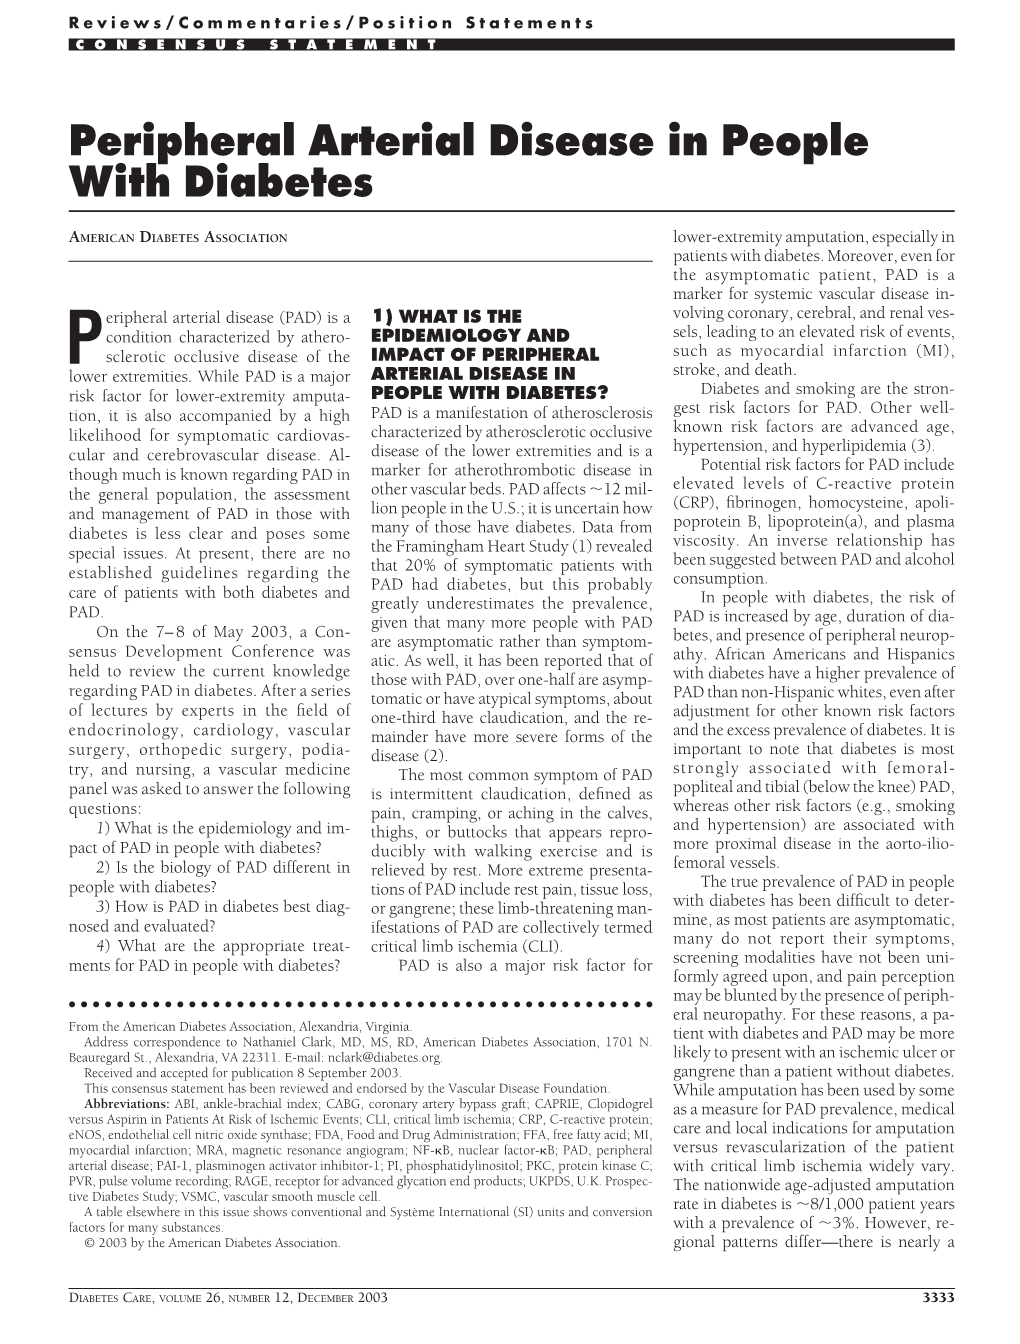 Peripheral Arterial Disease in People with Diabetes